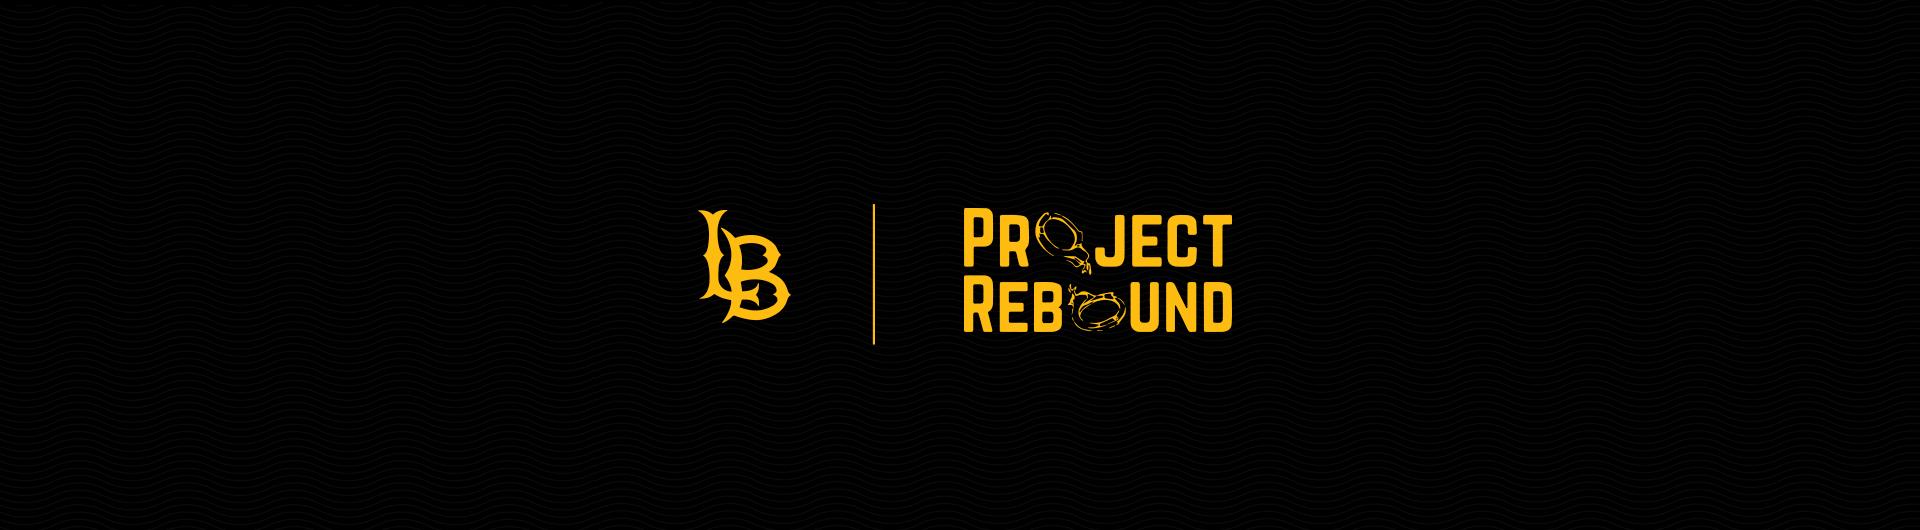 project rebound logo